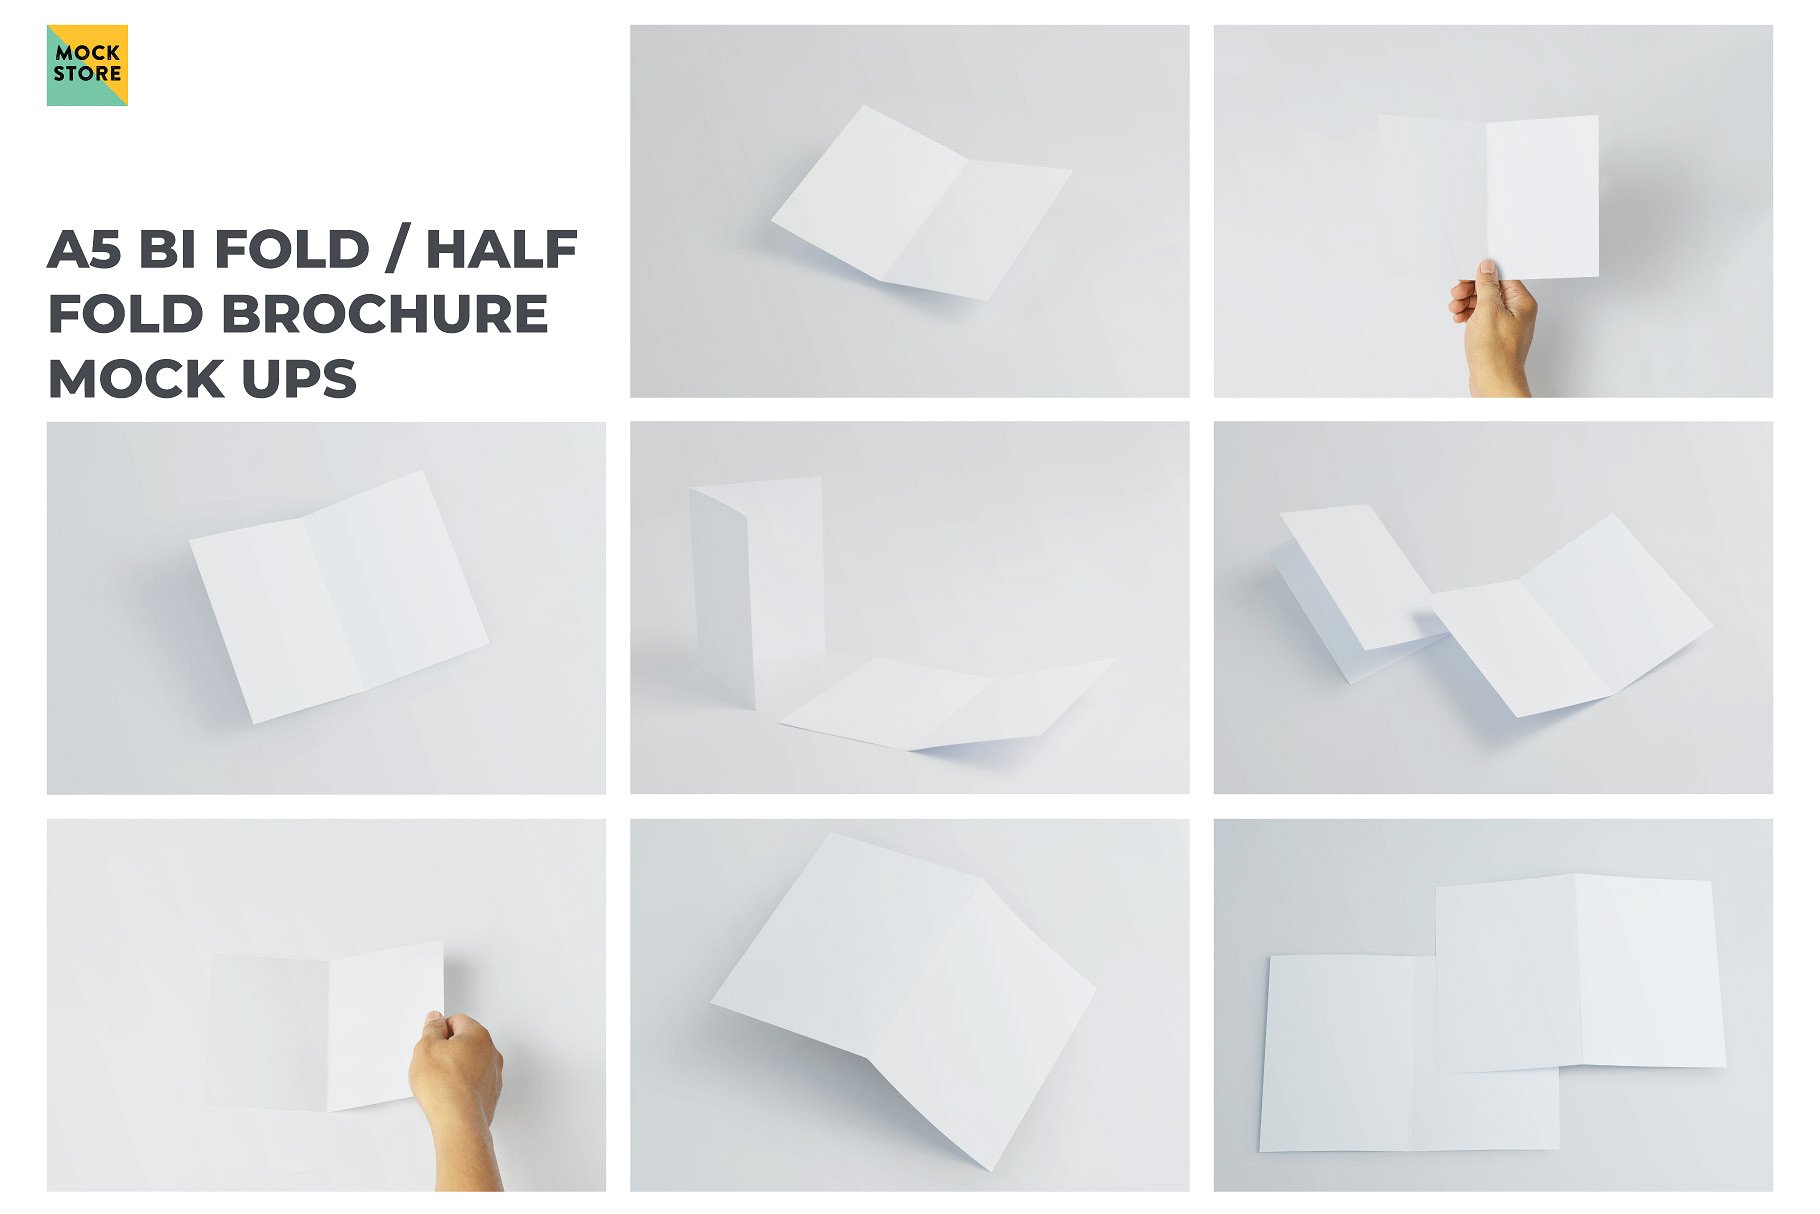 精装画册杂志设计提案展示样机PSD智能贴图模板 A5 Bifold Half-Fold Brochure Mockup插图8